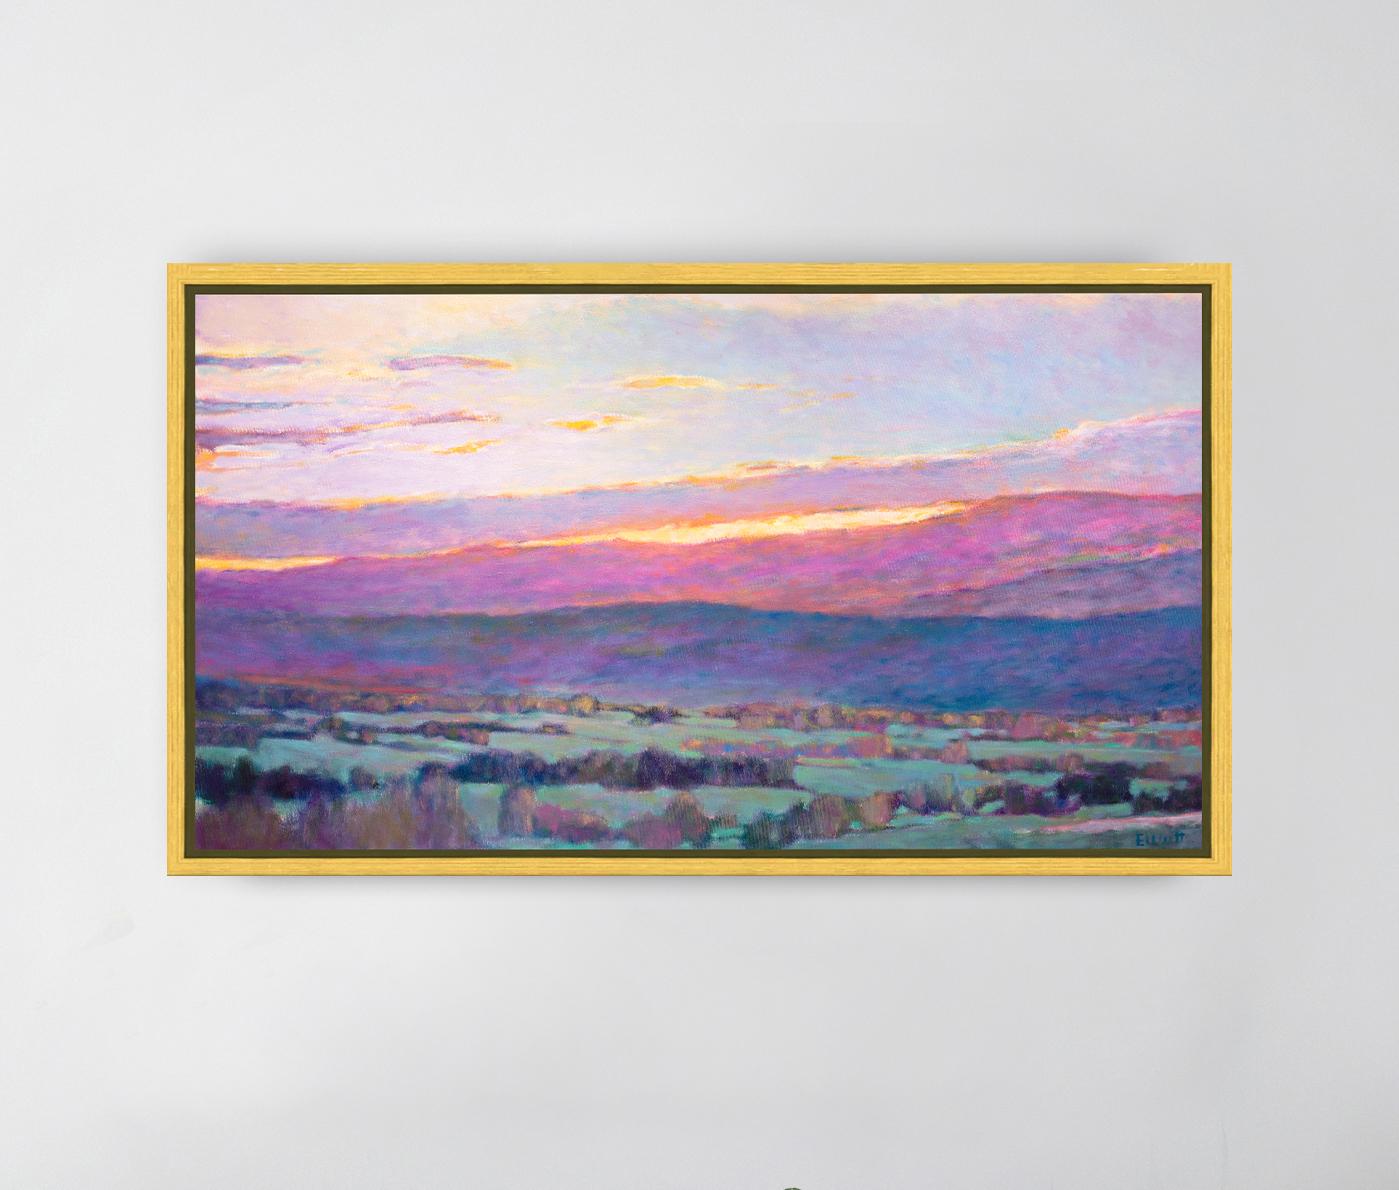 Dieses farbenfrohe, abstrakte Landschaftsbild ist ein limitierter Giclee-Druck von Ken Elliott mit einer Auflage von 195 Stück. Dieses auf Leinwand gedruckte Giclee wird in einem goldenen Schweberahmen gerahmt, verdrahtet und aufhängefertig